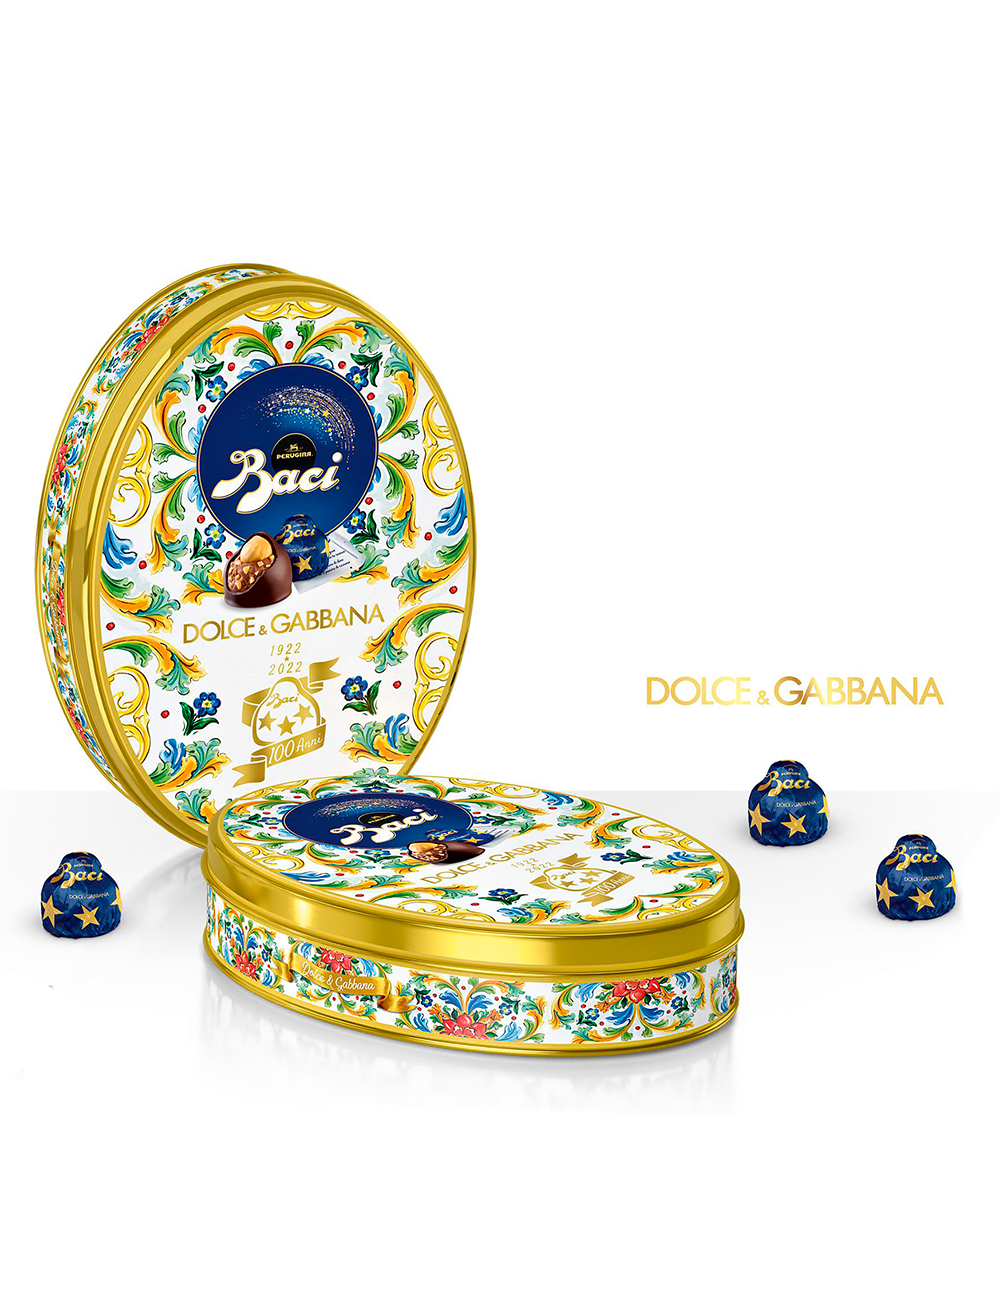 Baci Perugina Dolce & Gabbana tin 100 years 112.5 g